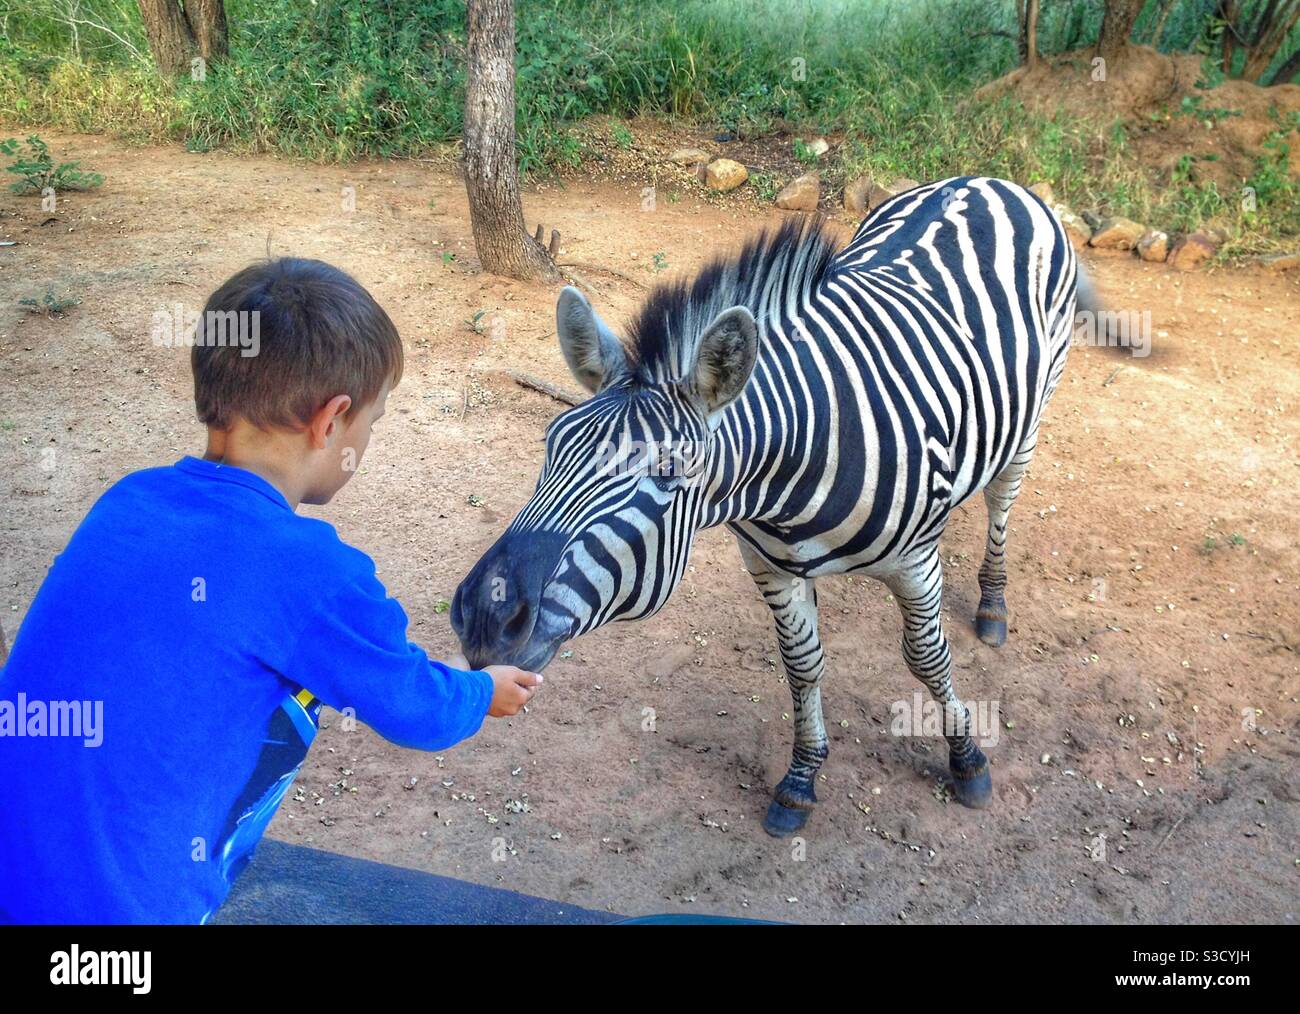 Kleiner Junge in Blau streckt sich auf ein Zebra zu Stockfoto